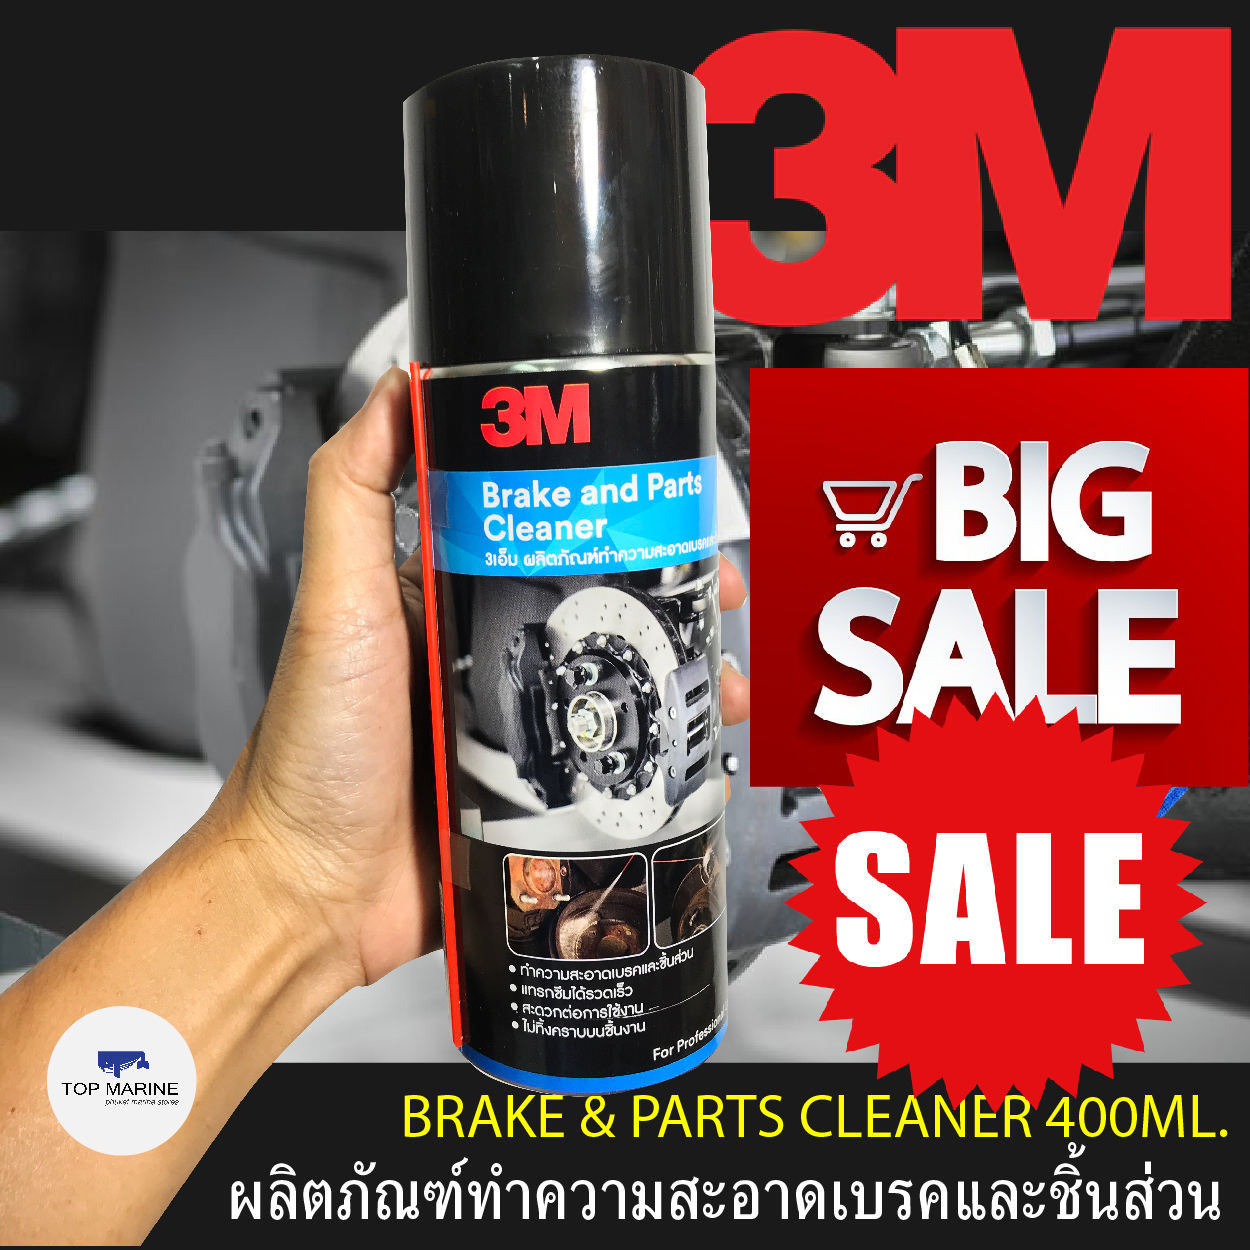 3เอ็ม ผลิตภัณฑ์ทำความสะอาดเบรคและชิ้นส่วน  เบรครถยนต์ 3M BRAKE PARTS CLEANER 400ML.